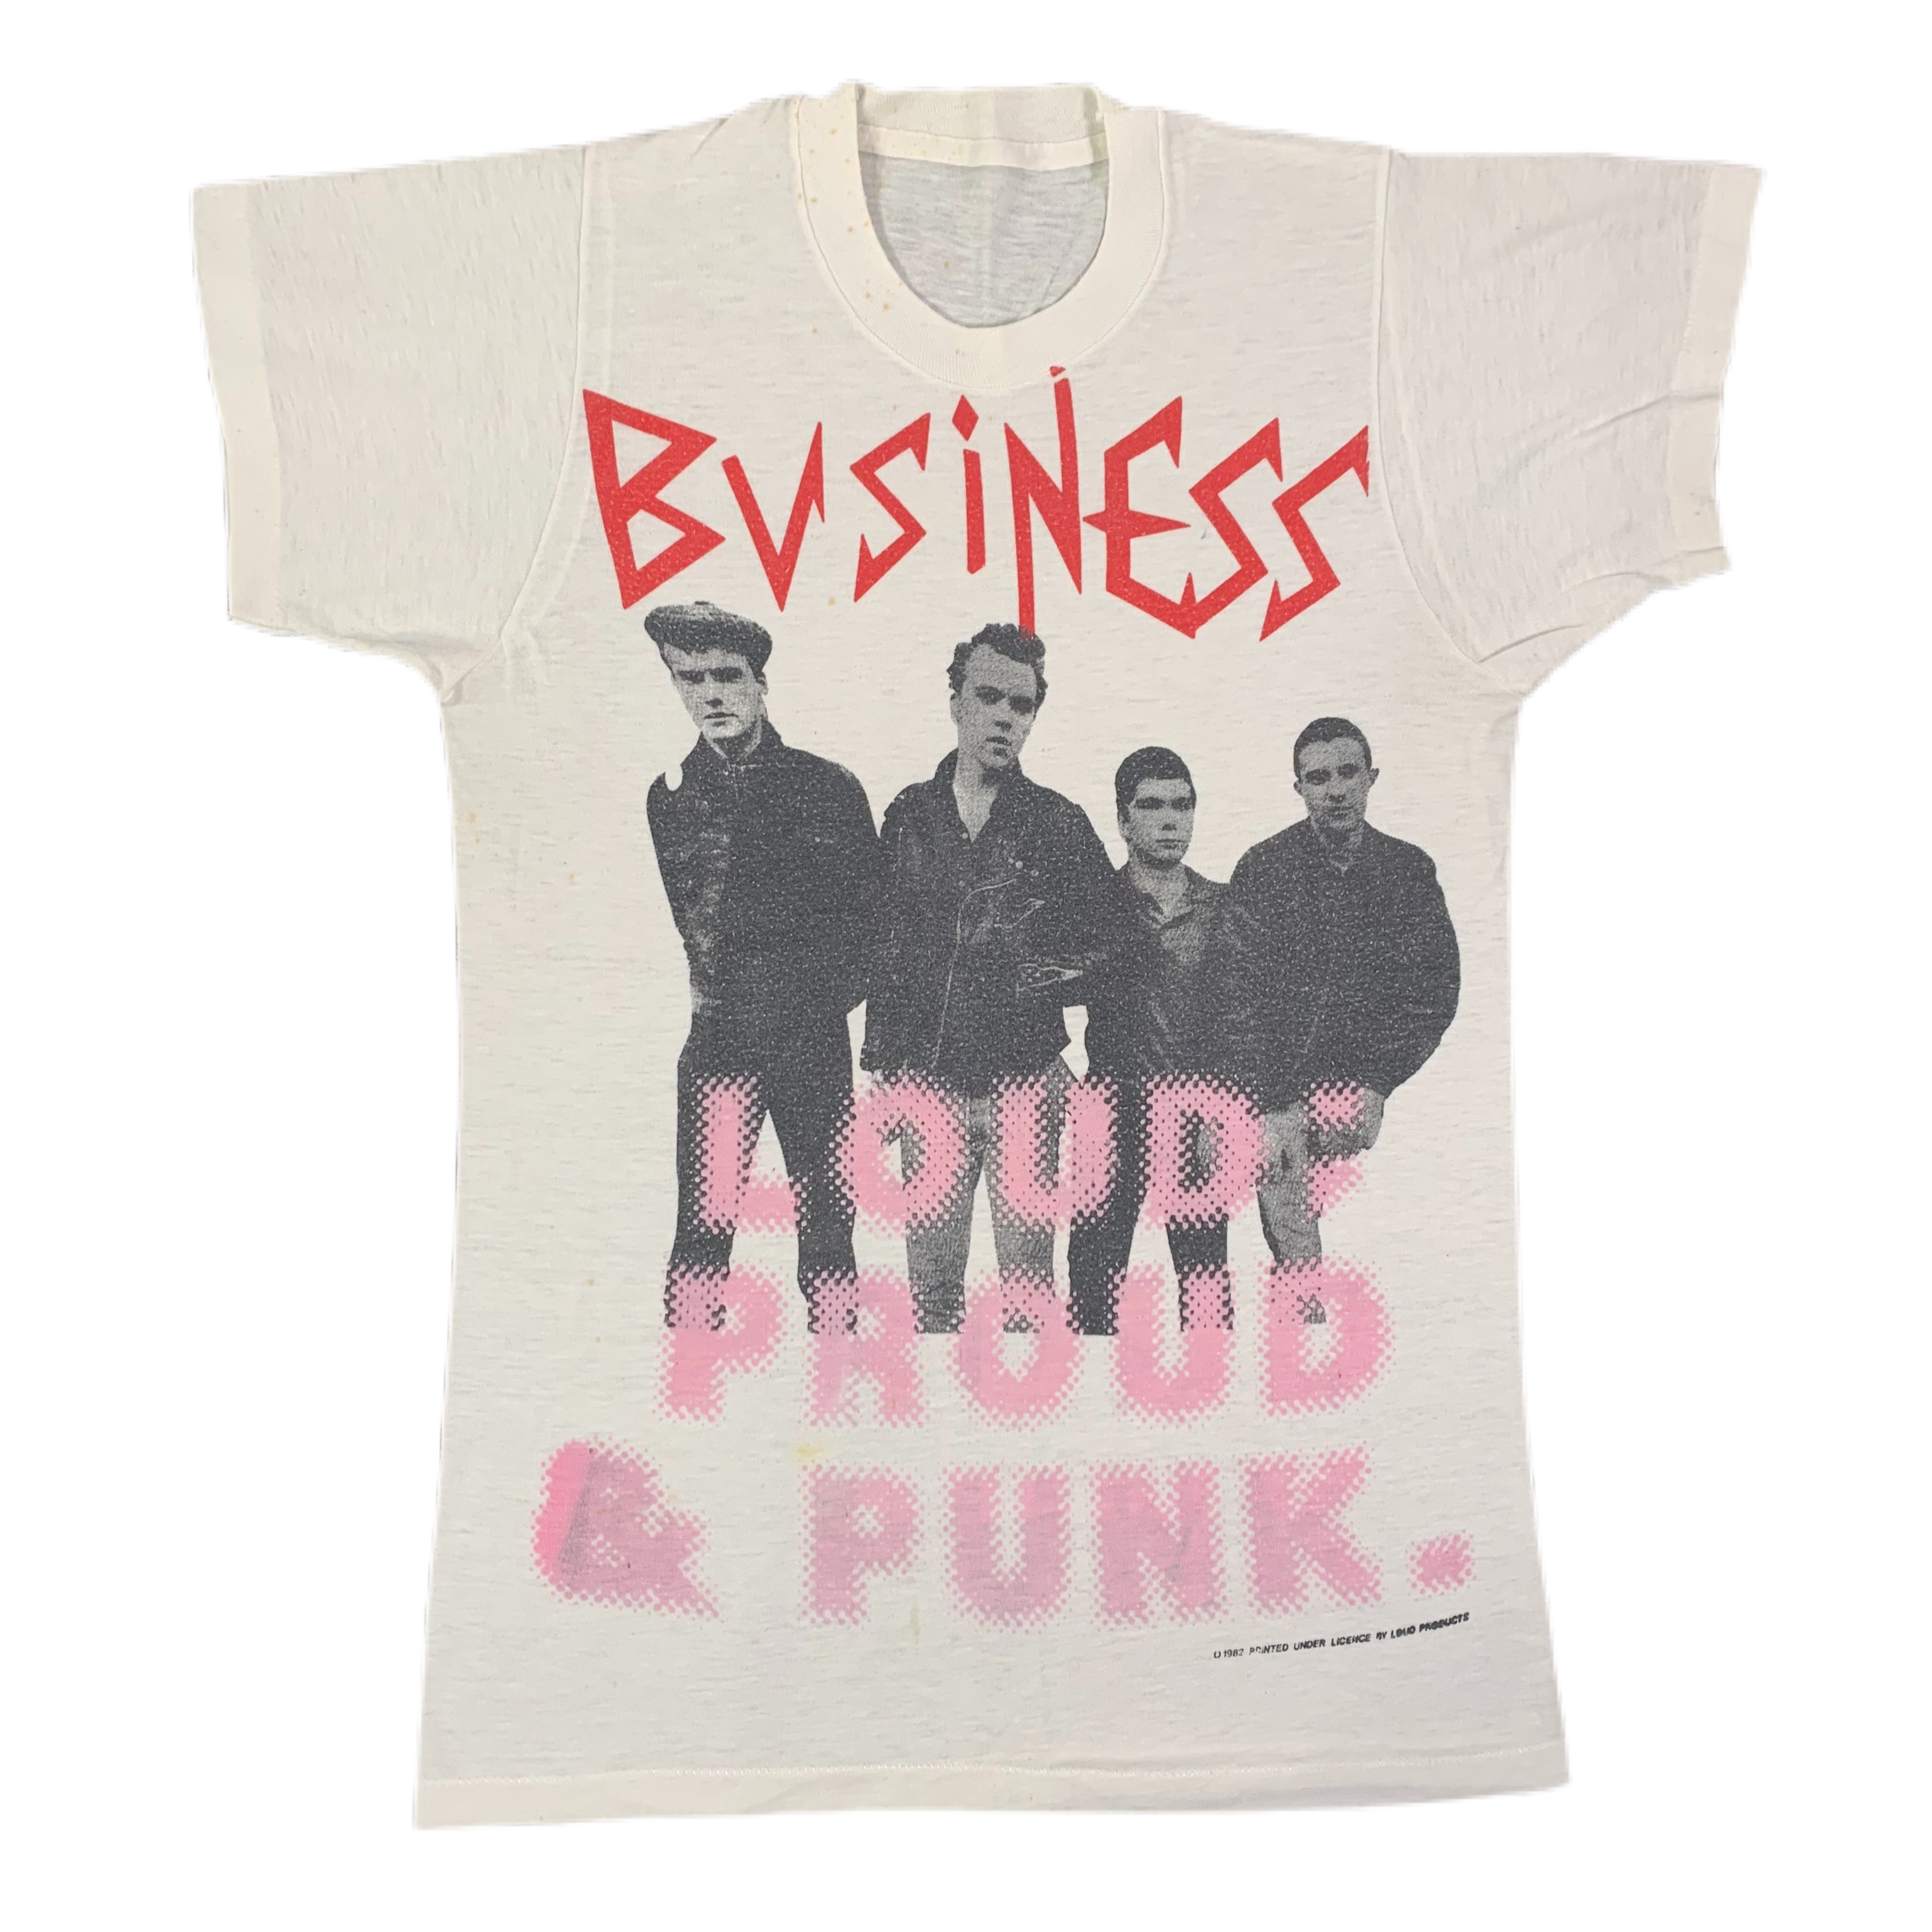 Vintage The Business "Loud: Punk Proud" T-Shirt jointcustodydc